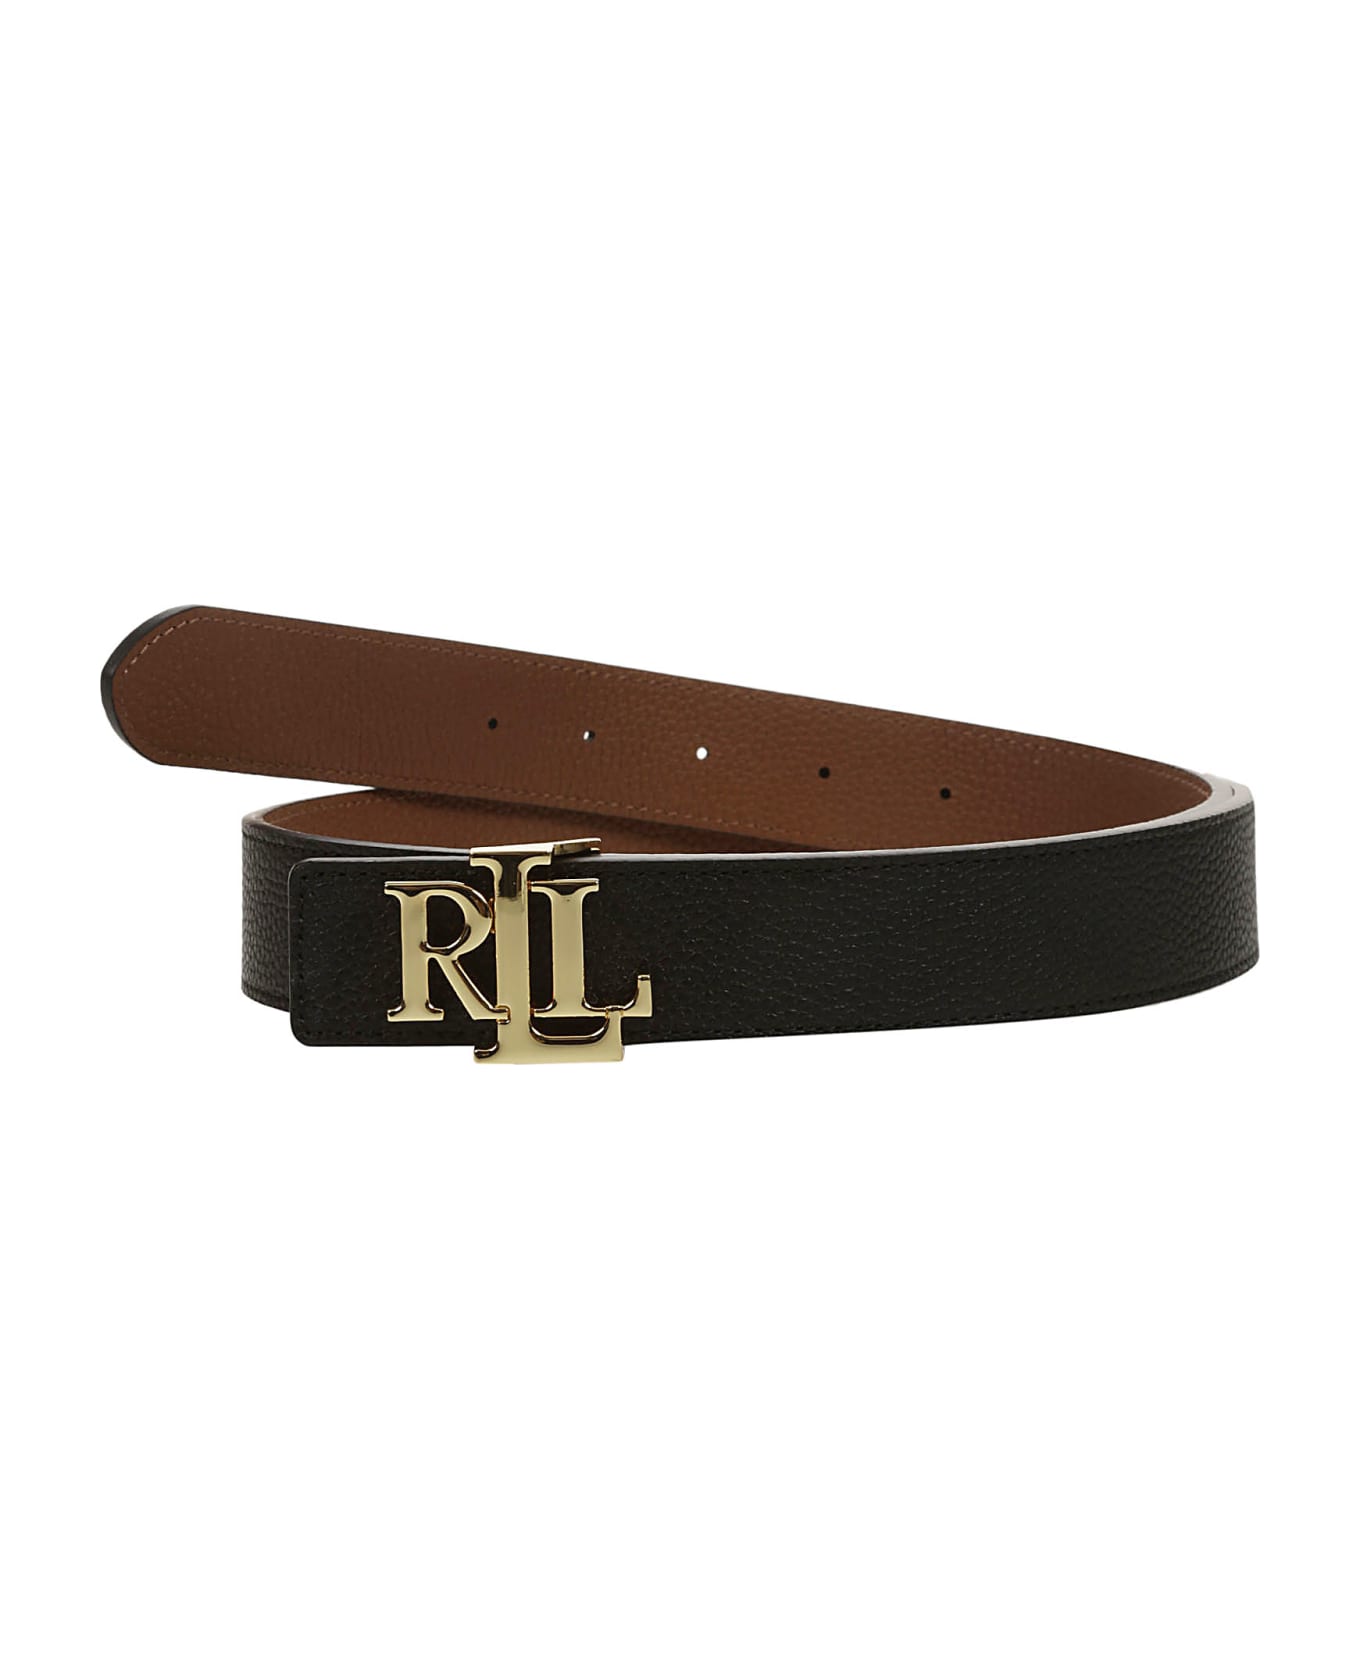 Ralph Lauren Rev Lrl 30 Belt Medium - Black Lauren Tan